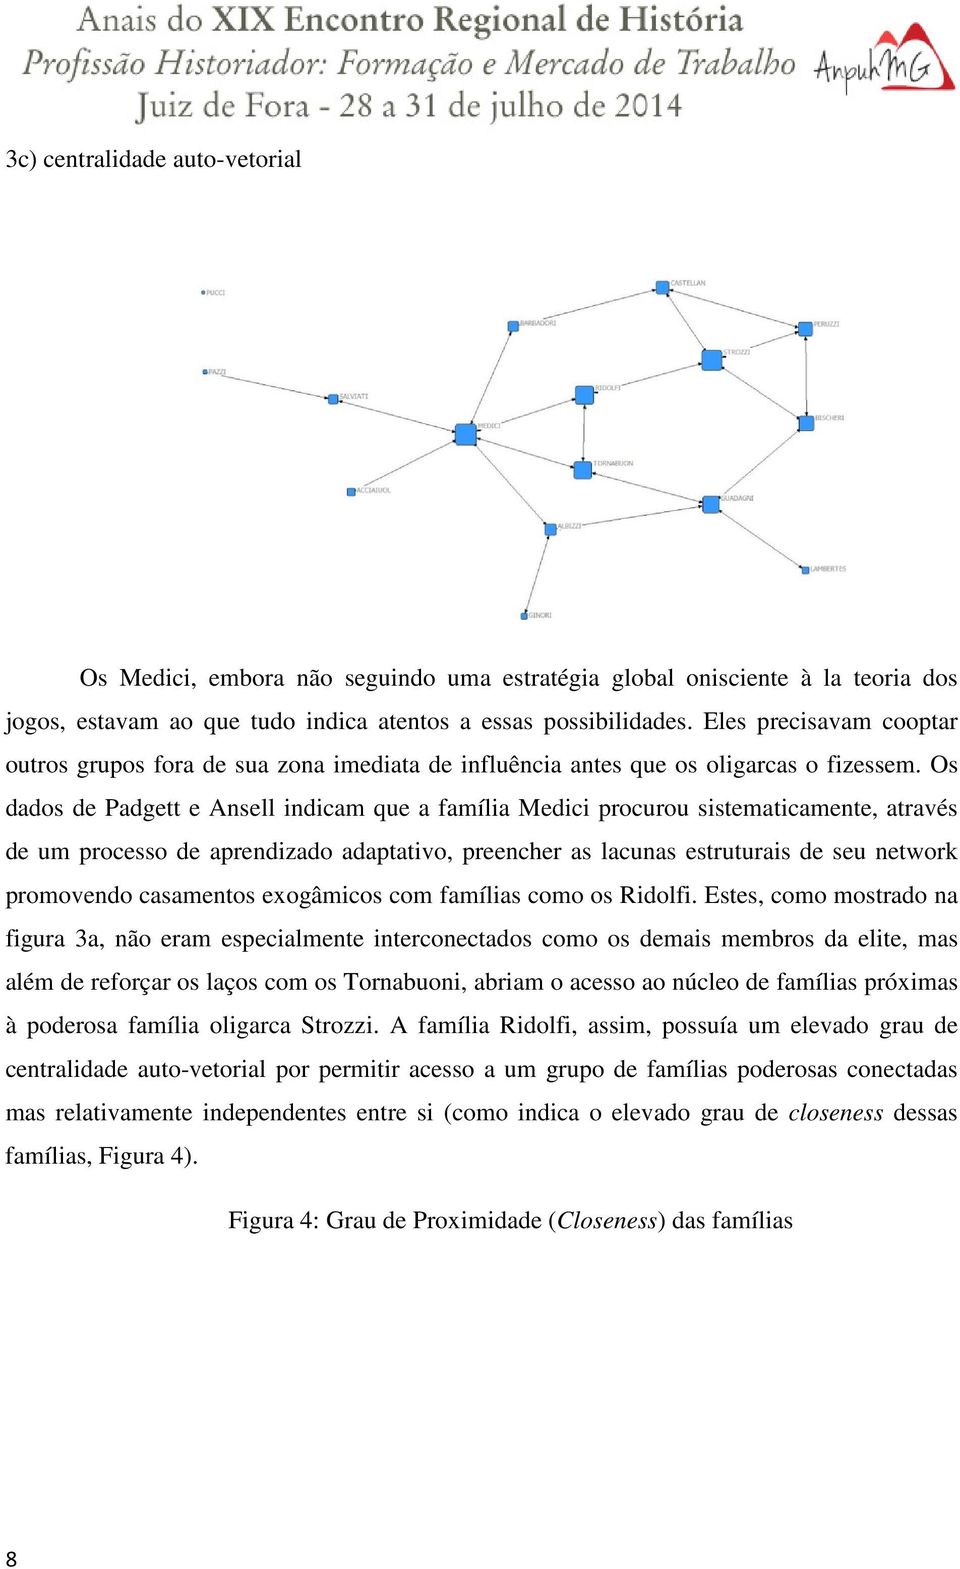 Os dados de Padgett e Ansell indicam que a família Medici procurou sistematicamente, através de um processo de aprendizado adaptativo, preencher as lacunas estruturais de seu network promovendo